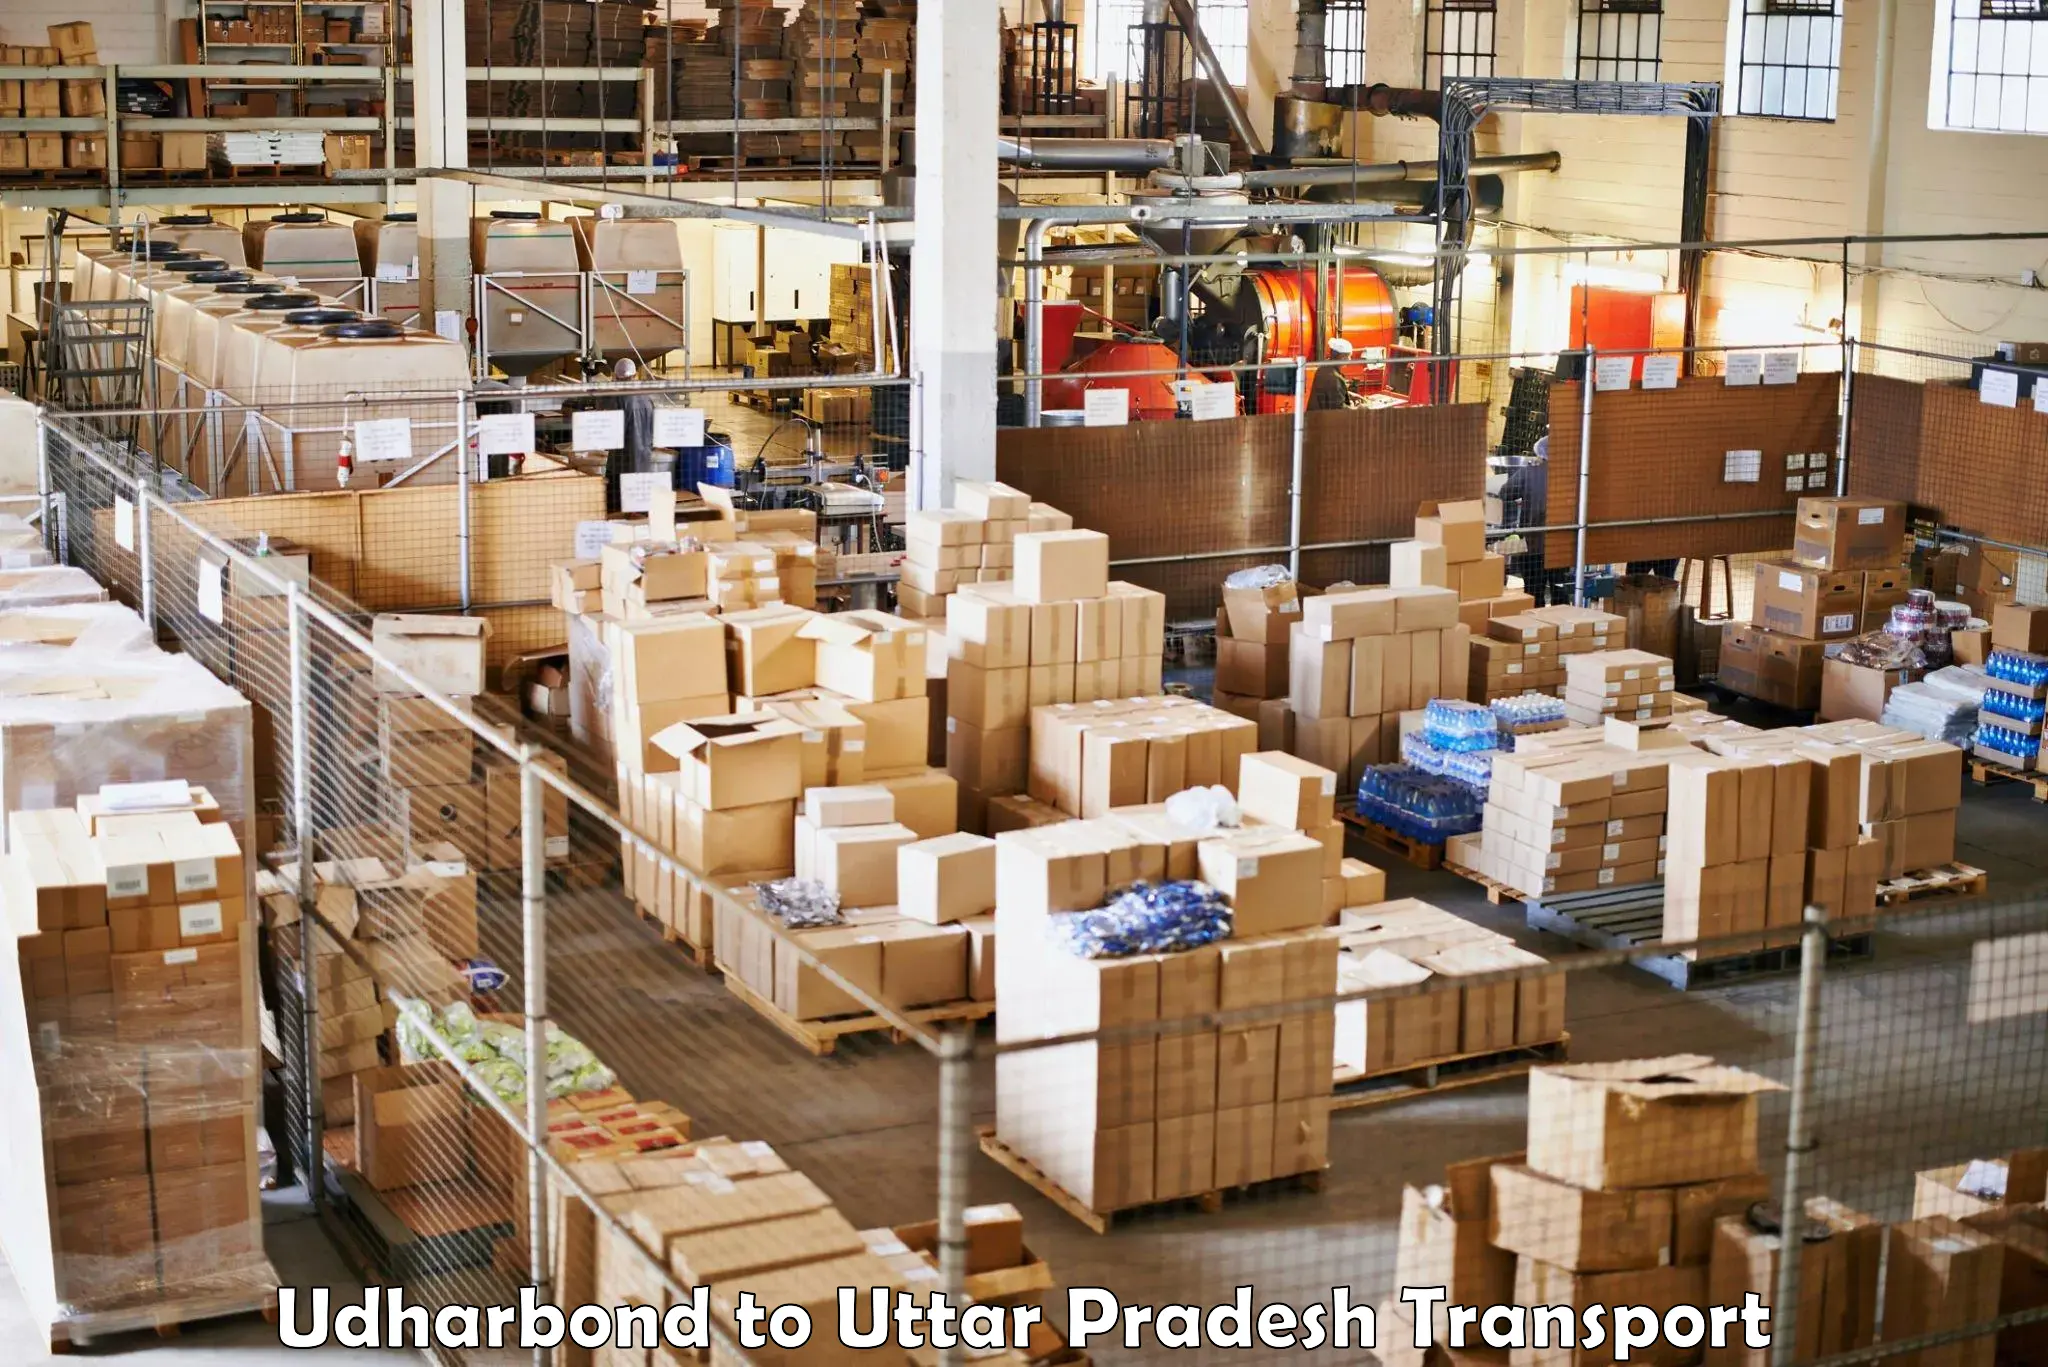 Delivery service Udharbond to Mehnagar